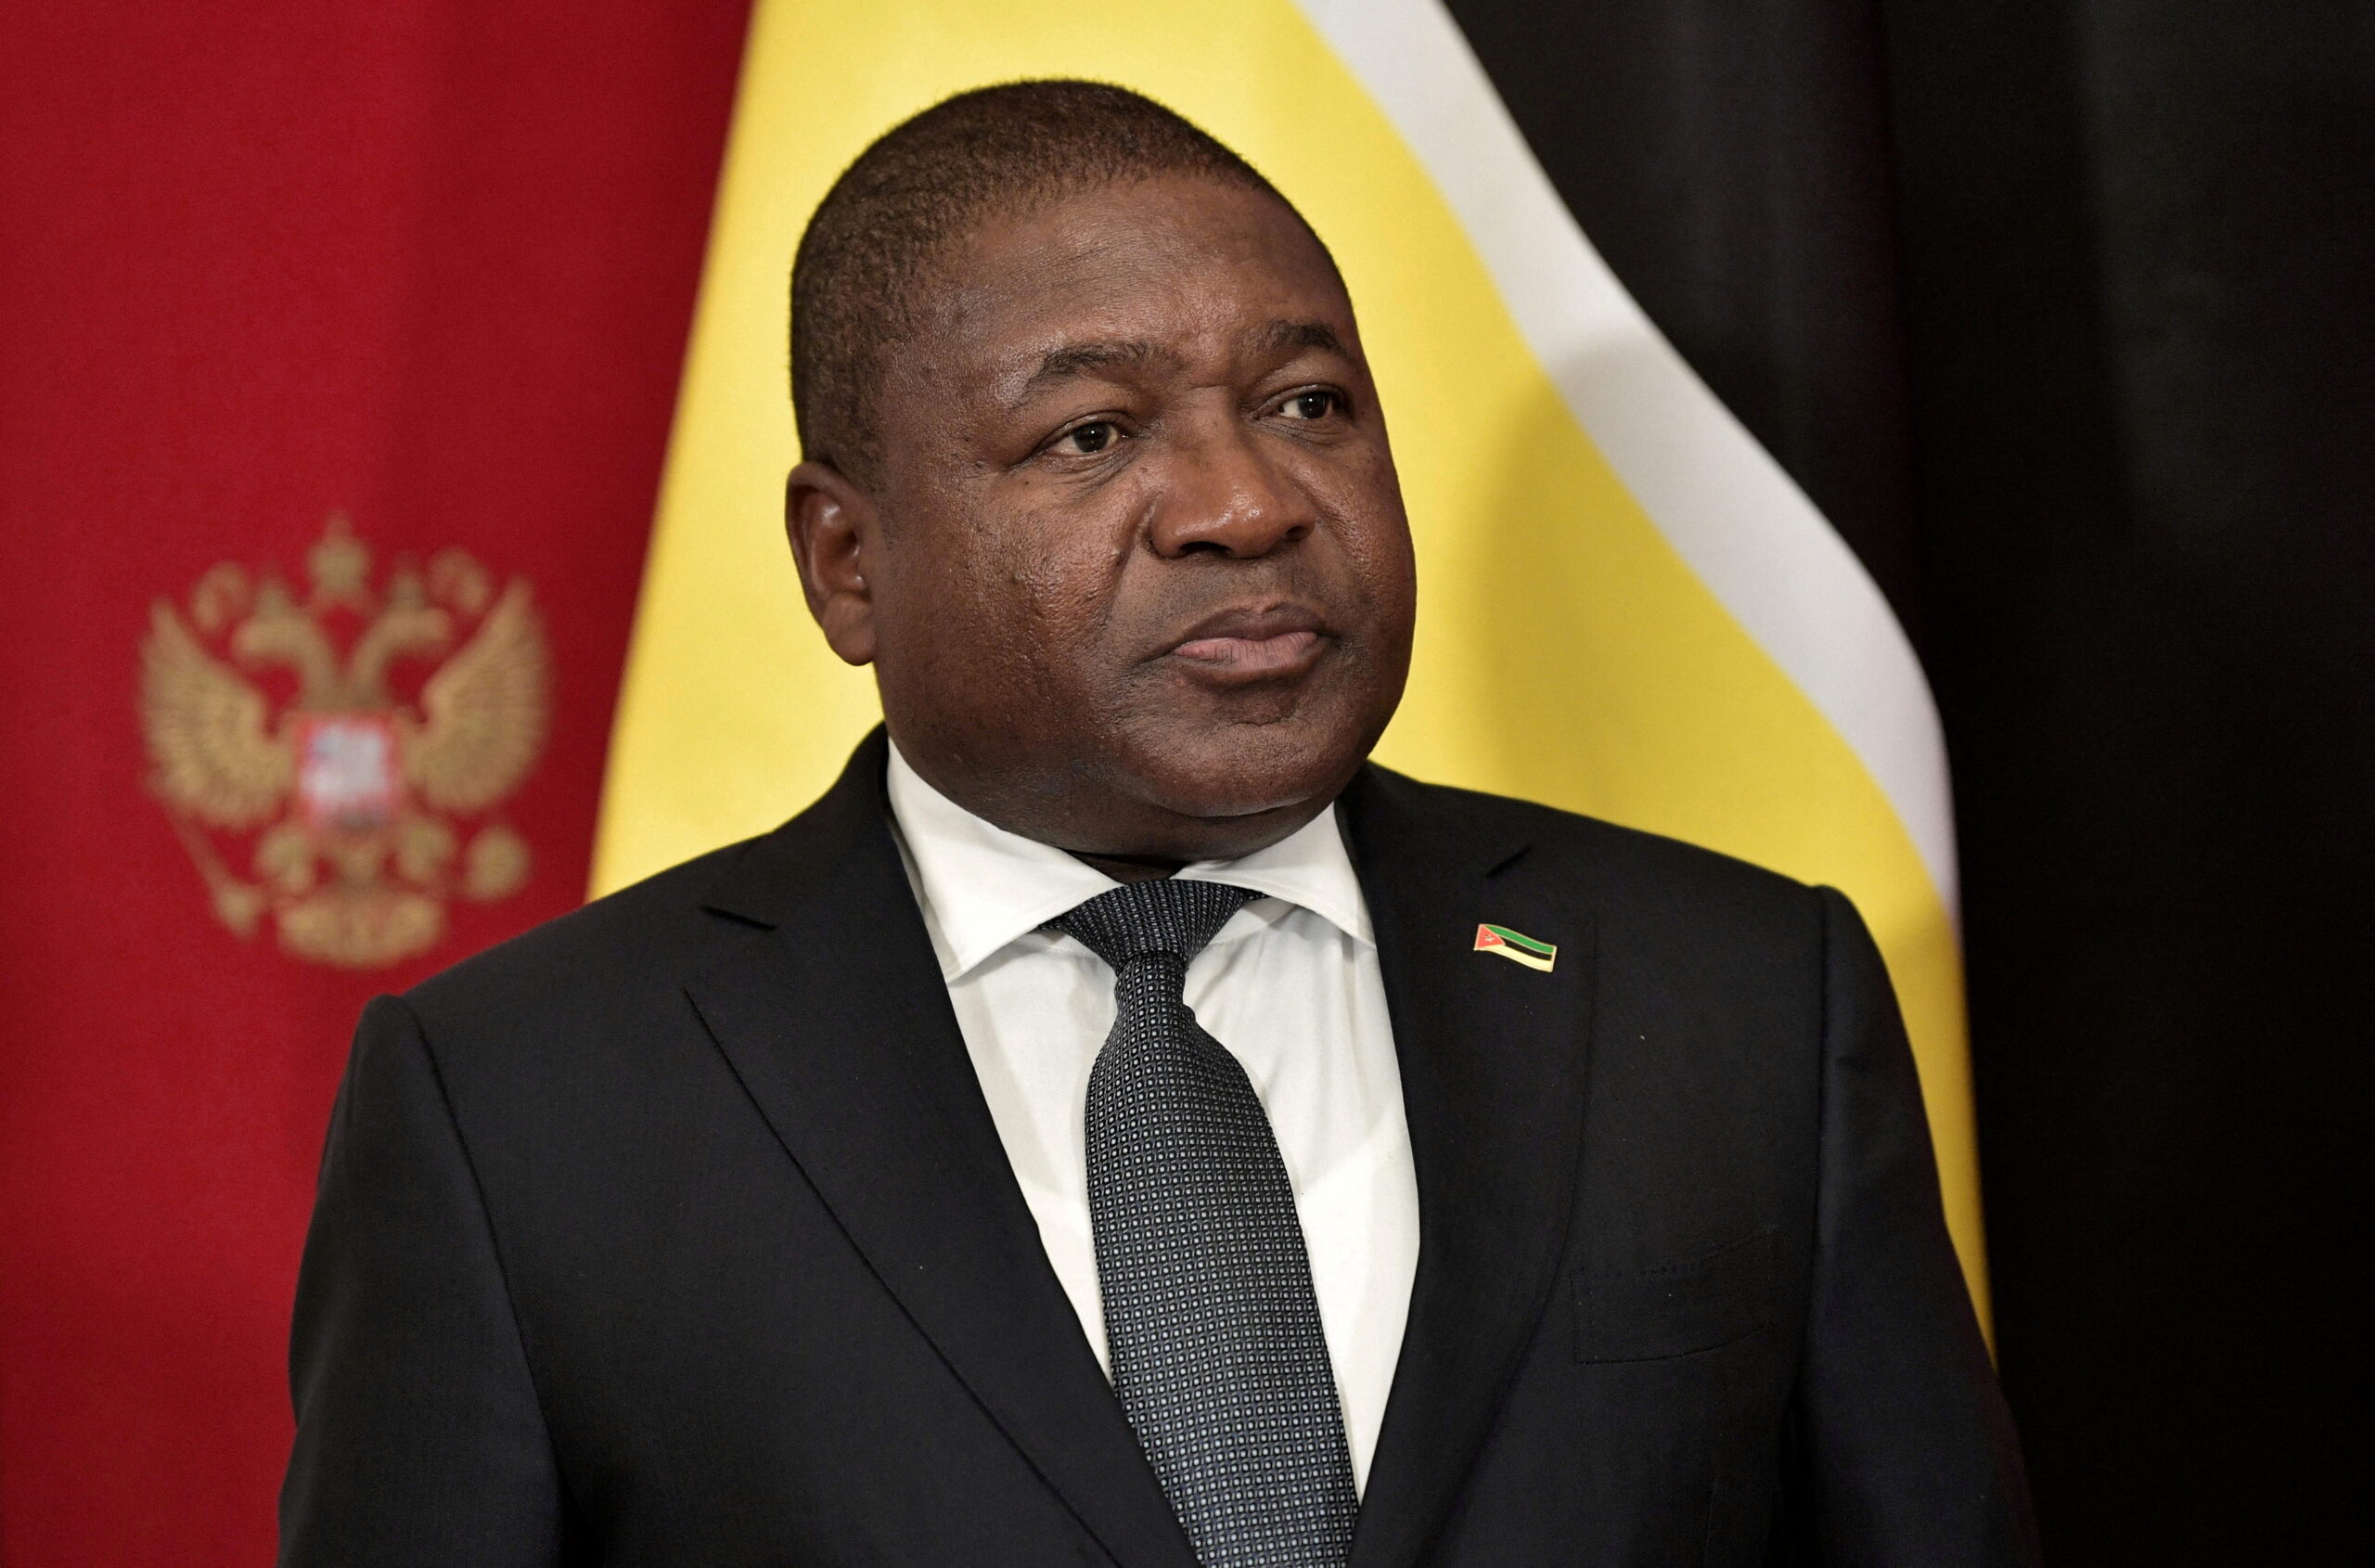 Présidentielle en Mozambique : Le candidat du parti au pouvoir enfin connu